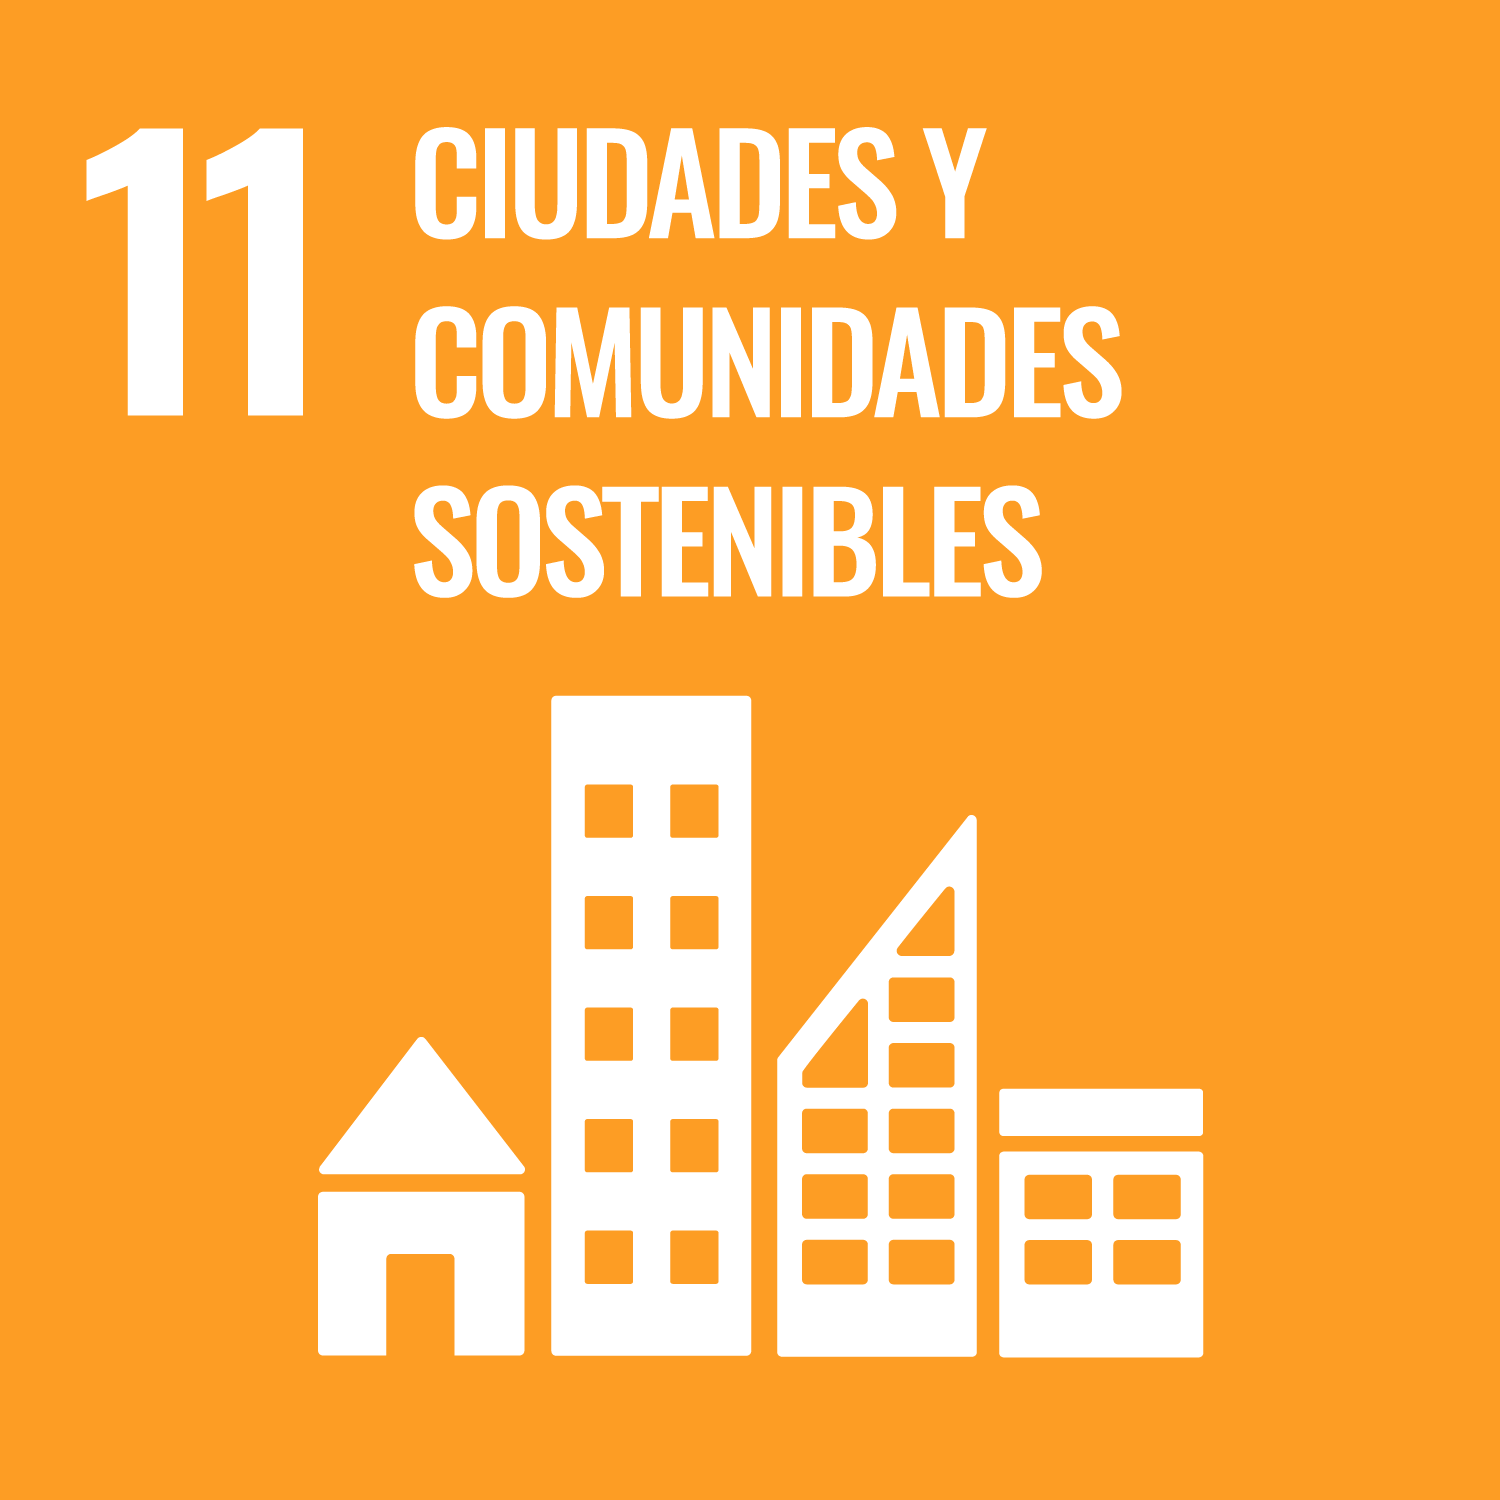 11. Lograr que las ciudades y los asentamientos humanos sean inclusivos, seguros, resilientes y sostenibles.